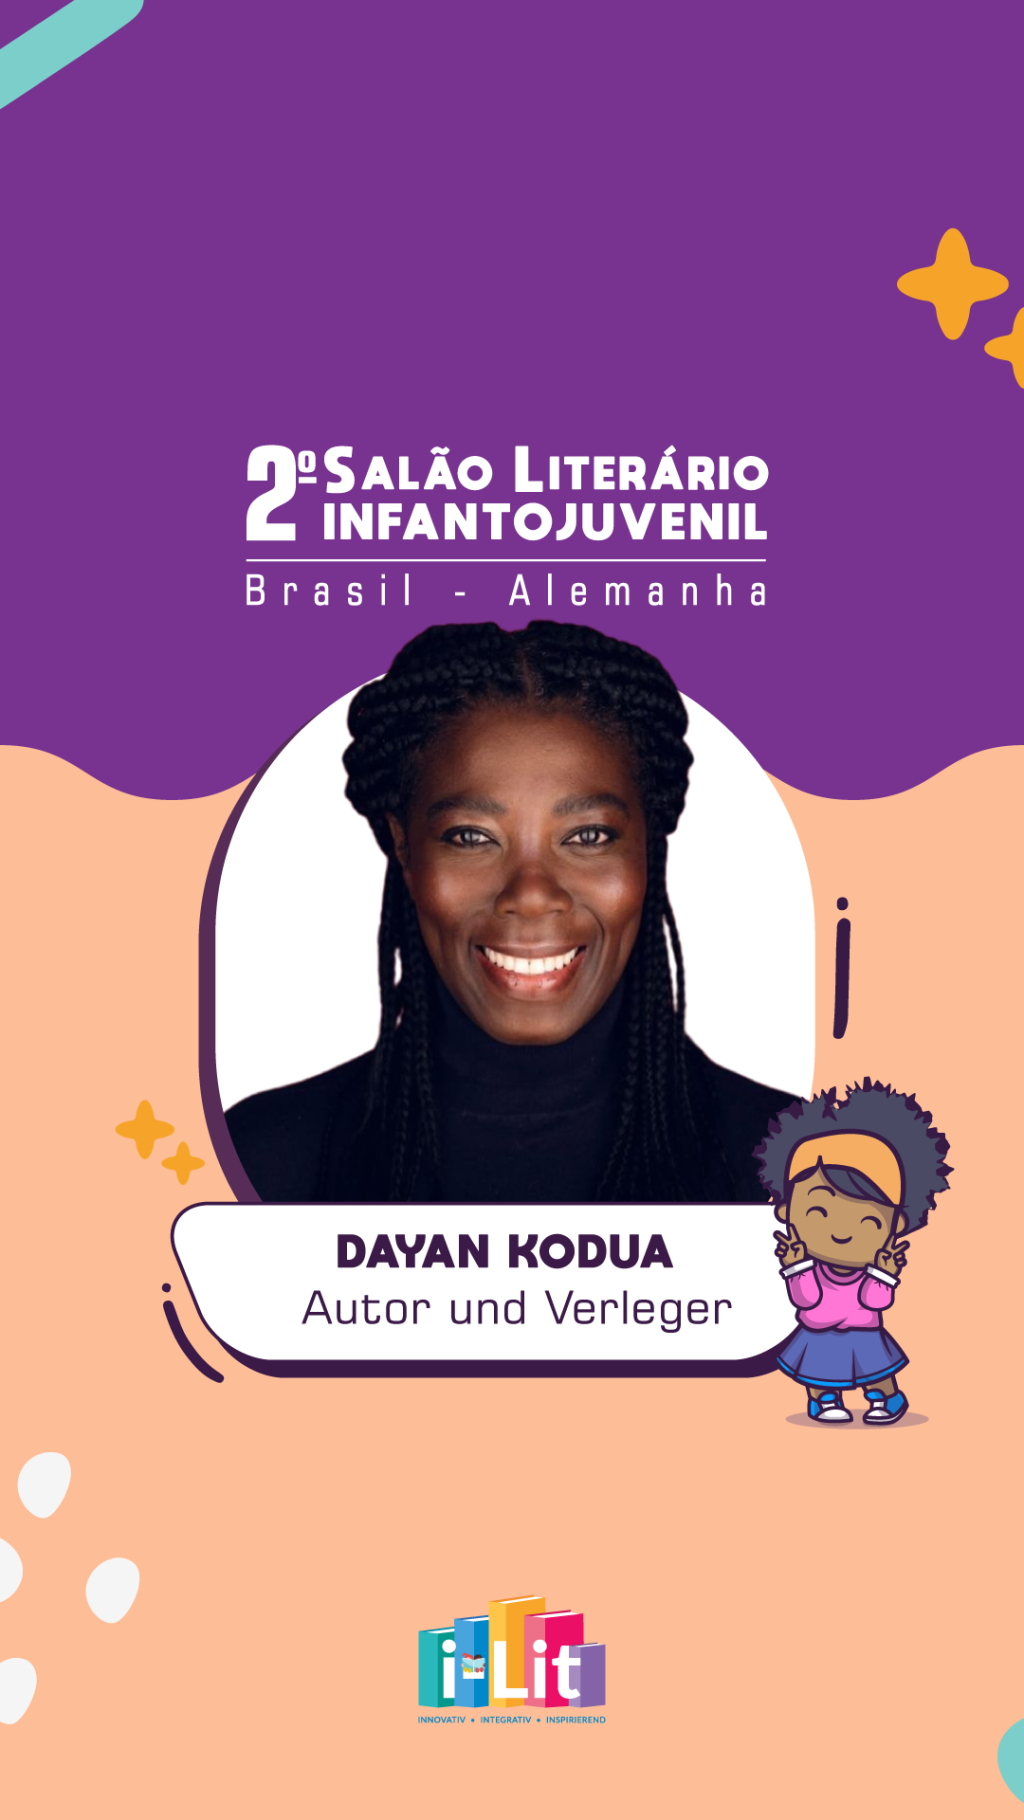 A incrível Dayan Kodua terá dois de seus livros representados pela i-Lit durante o 2° Salão Literário Infantojuvenil Brasil – Alemanha!